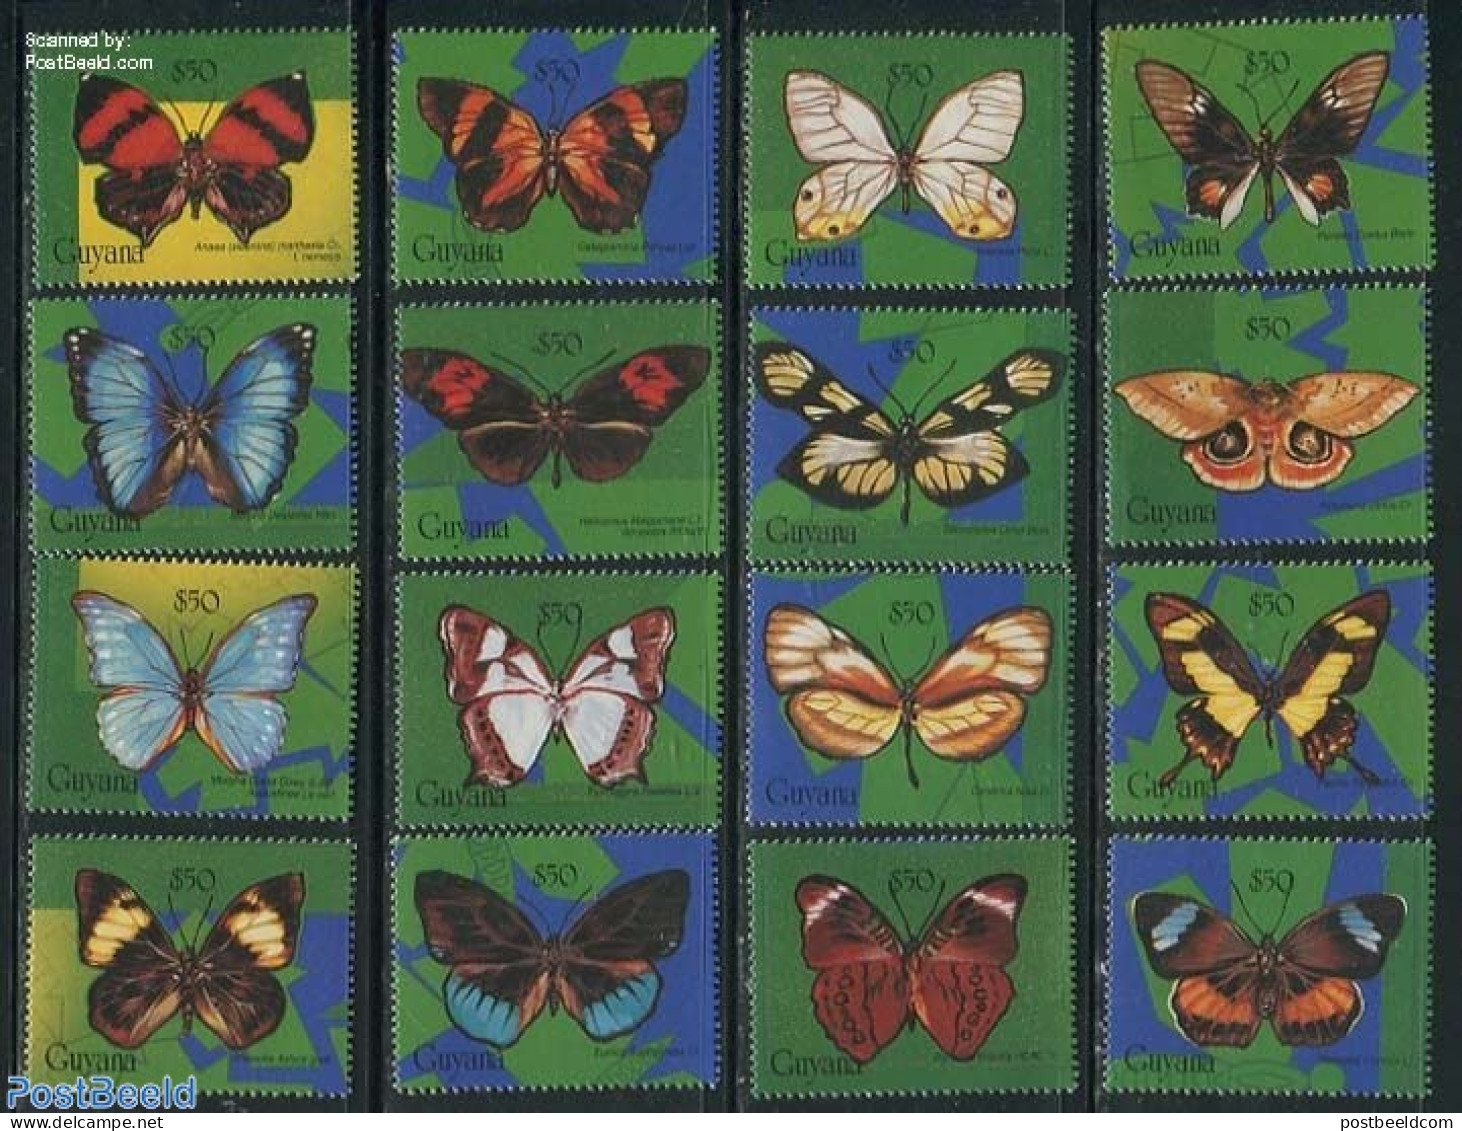 Guyana 1994 Butterflies 16v, Mint NH, Nature - Butterflies - Guyana (1966-...)